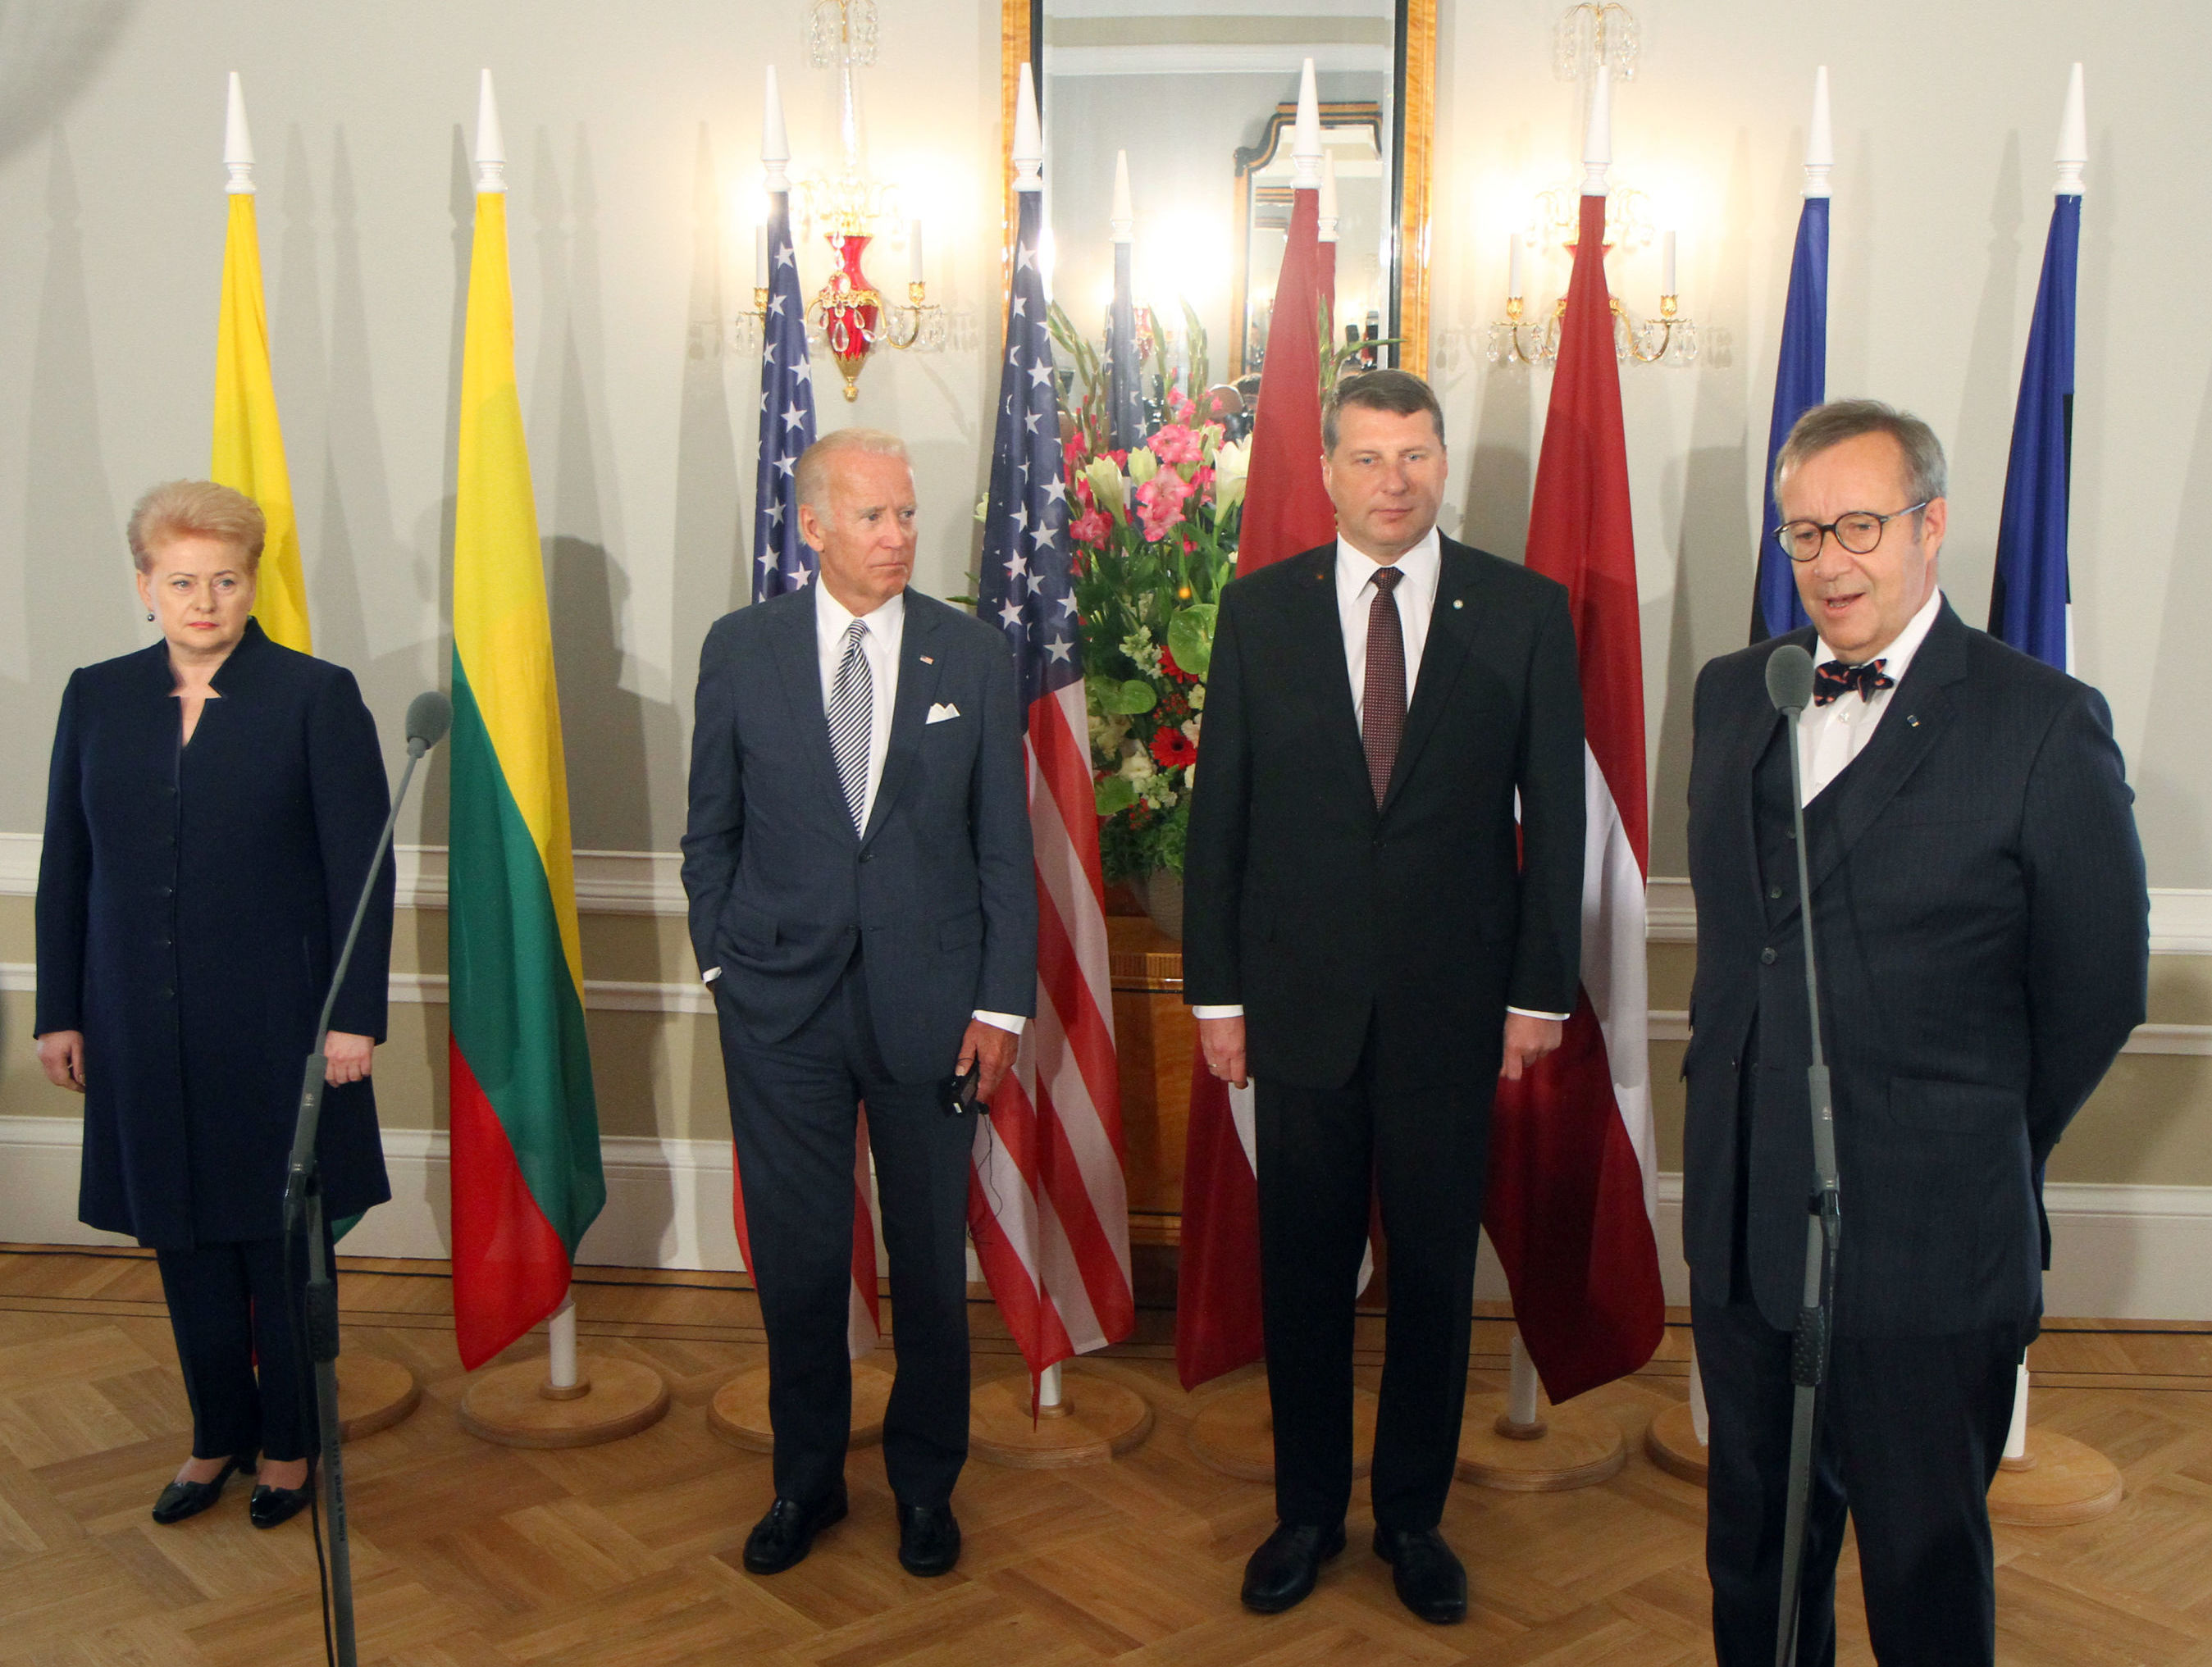 Президент Литвы Даля Грибаускайте, вице-президент США Джо Байден, президент Латвии Раймонд Вейонис и президент Эстонии Тоомас Хендрик Ильвес во время совместной пресс-конференции после встречи в Риге, 23 августа 2016 года